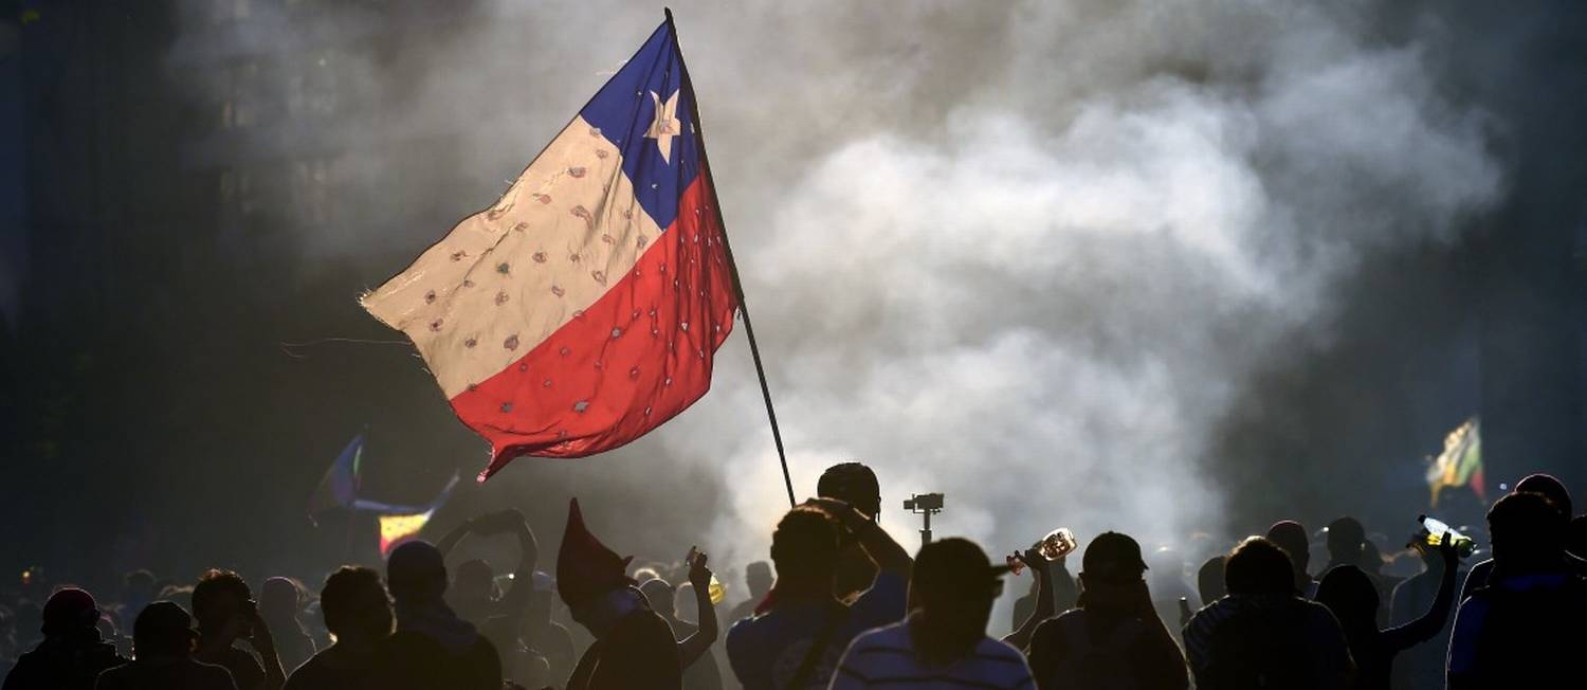 Manifestantes balançam bandeira do Chile em frente a incêndio em Santiago Foto: JOHAN ORDONEZ / AFP 23-11-19